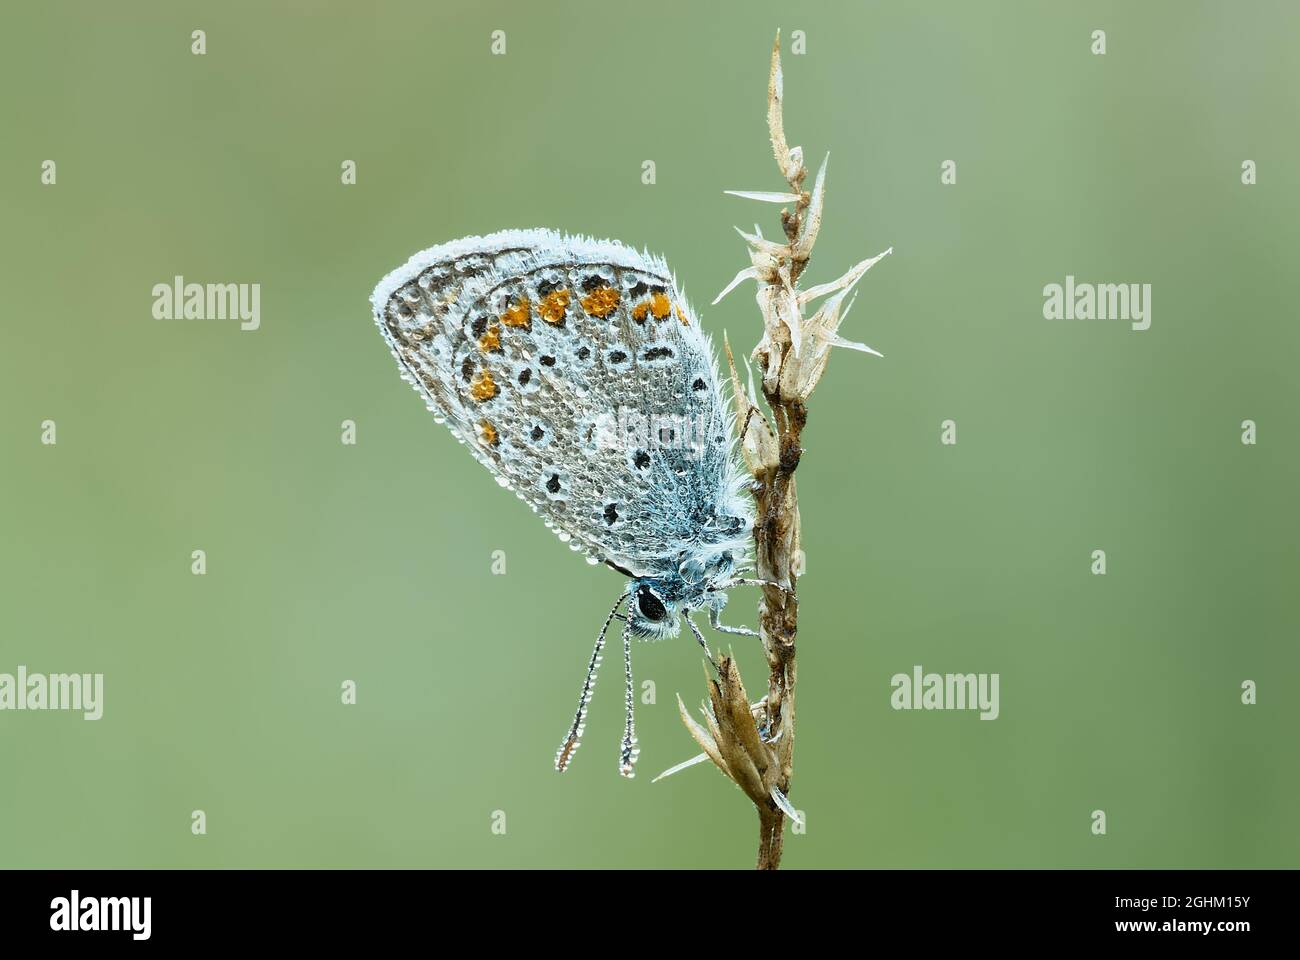 Gewöhnlicher Blauer Schmetterling mit Wassertropfen auf den Flügeln, Morgentau. Sitzen auf trockenem Gras. Seitenansicht, Nahaufnahme. Speicherplatz kopieren. Gattung Polyommatus icarus. Stockfoto